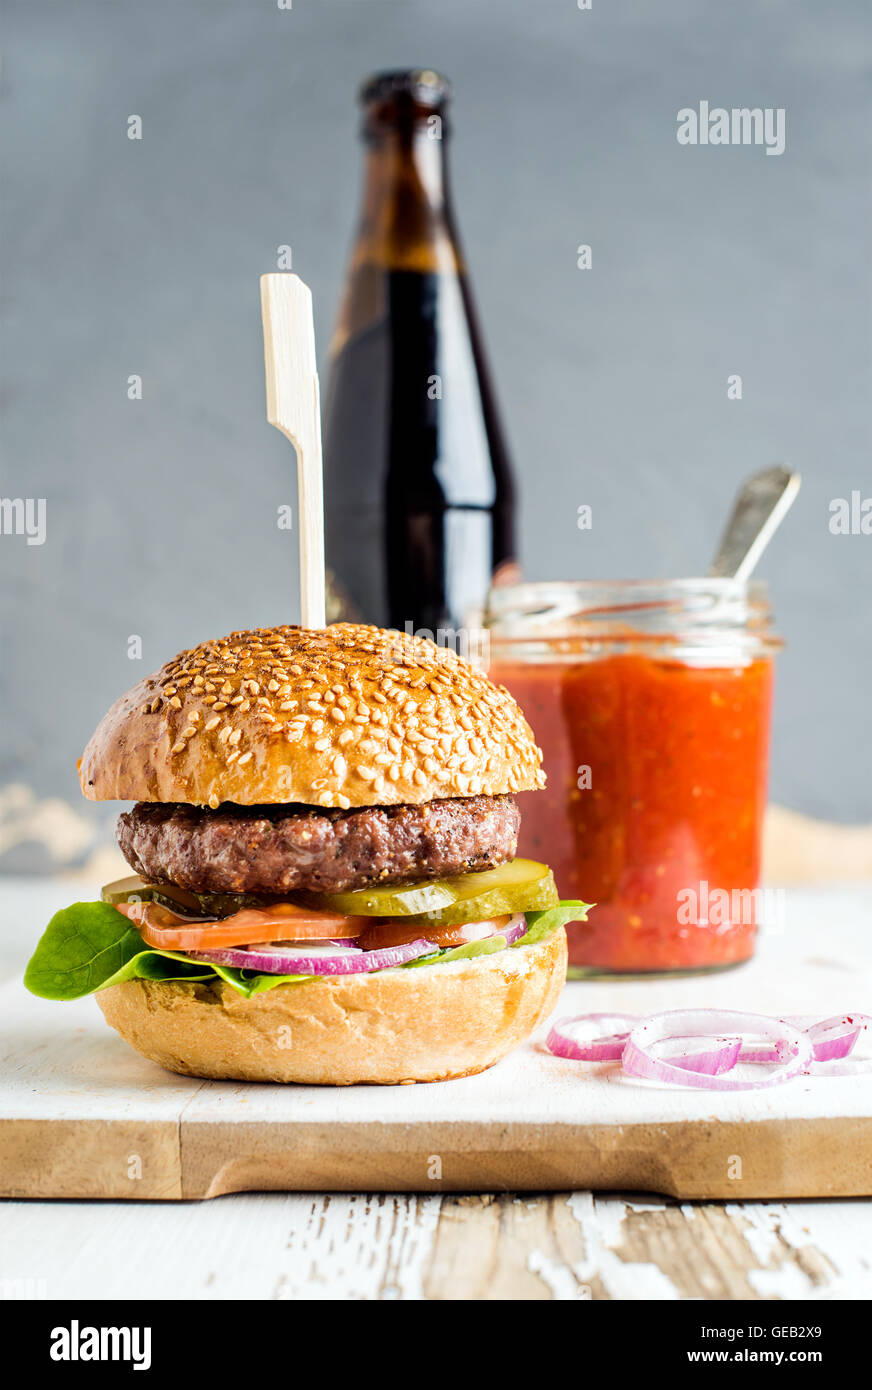 Burger maison en bois servant à bord avec sauce tomate piquante et  bouteille de bière brune, fond blanc Photo Stock - Alamy